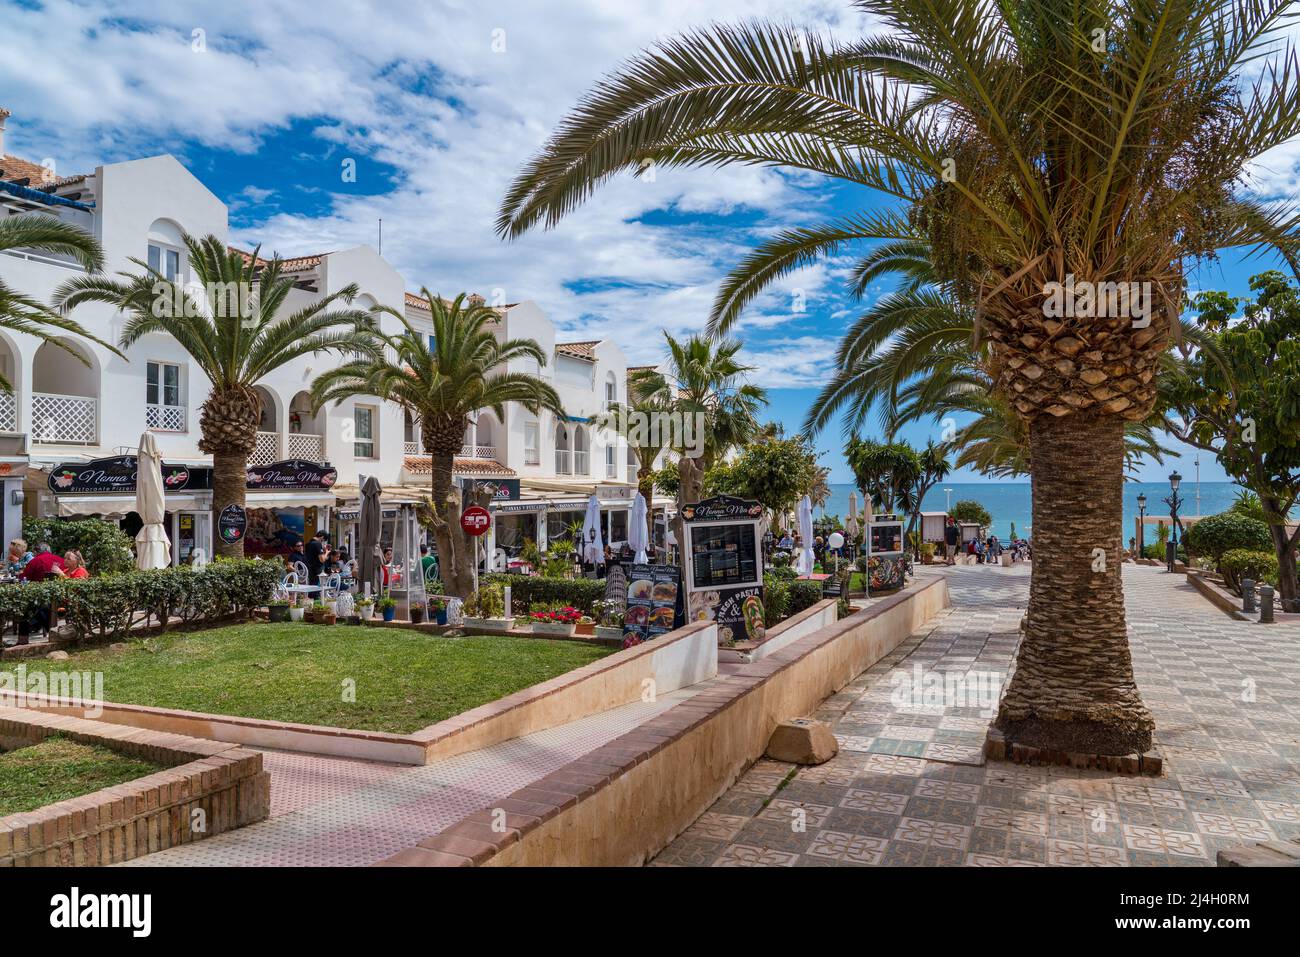 Plaza de los Cangrejos in der Nähe des Strandes von Torrecilla. Es ist ein Platz voller Restaurants und Bars. Menschen genießen einen sonnigen Tag in der Nähe des Strandes. Stockfoto